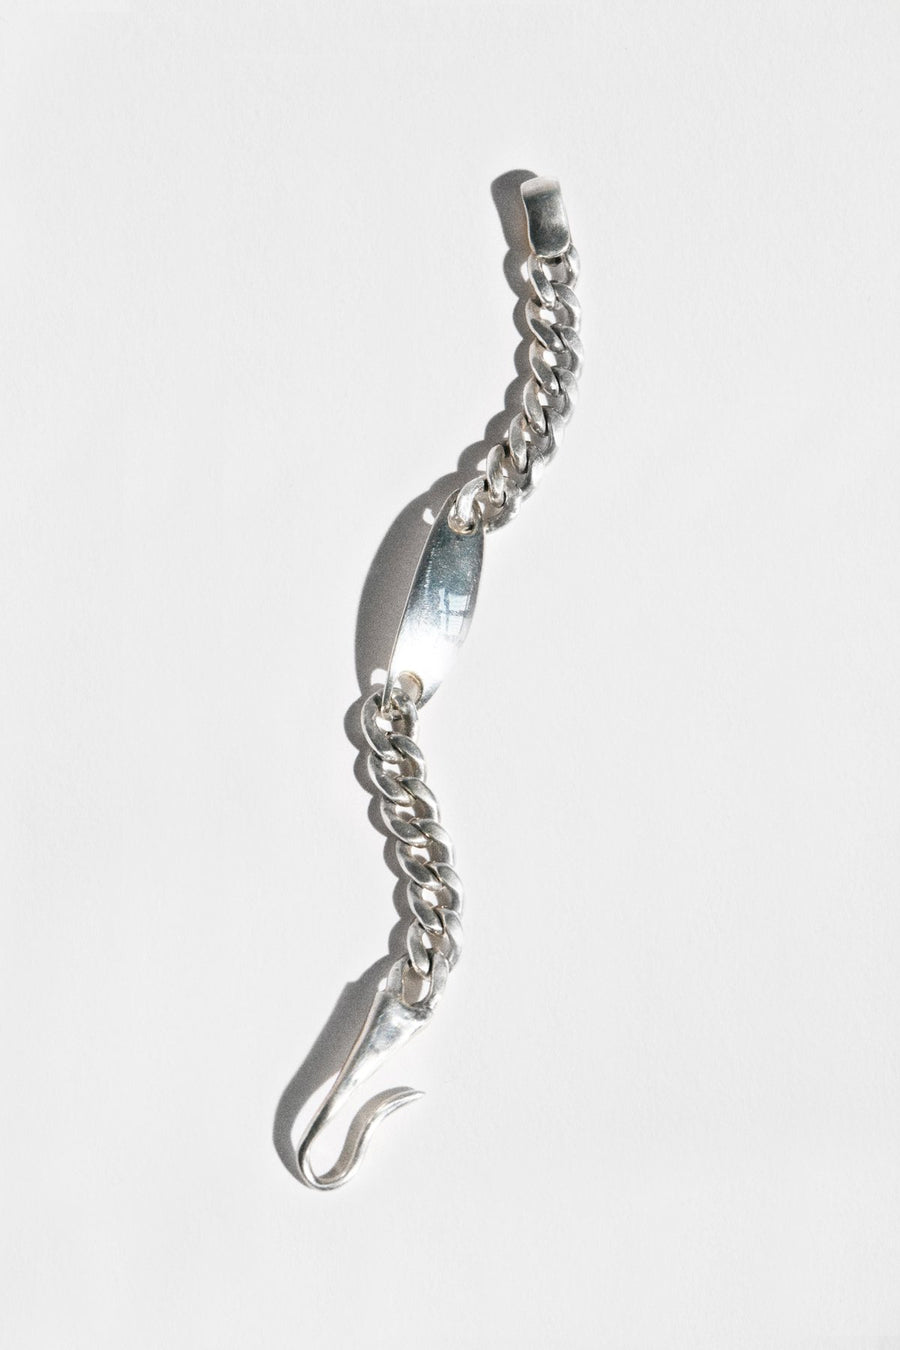 Hernan Herdez- Jewellery-jewelry-Jeryco Store- London- ID Bracelet-bracelets for him-bracelets for her-unisex bracelets- sterling silver- chain bracelet- Hook closure bracelet-chunky sterling silver bracelet-ID chain bracelet